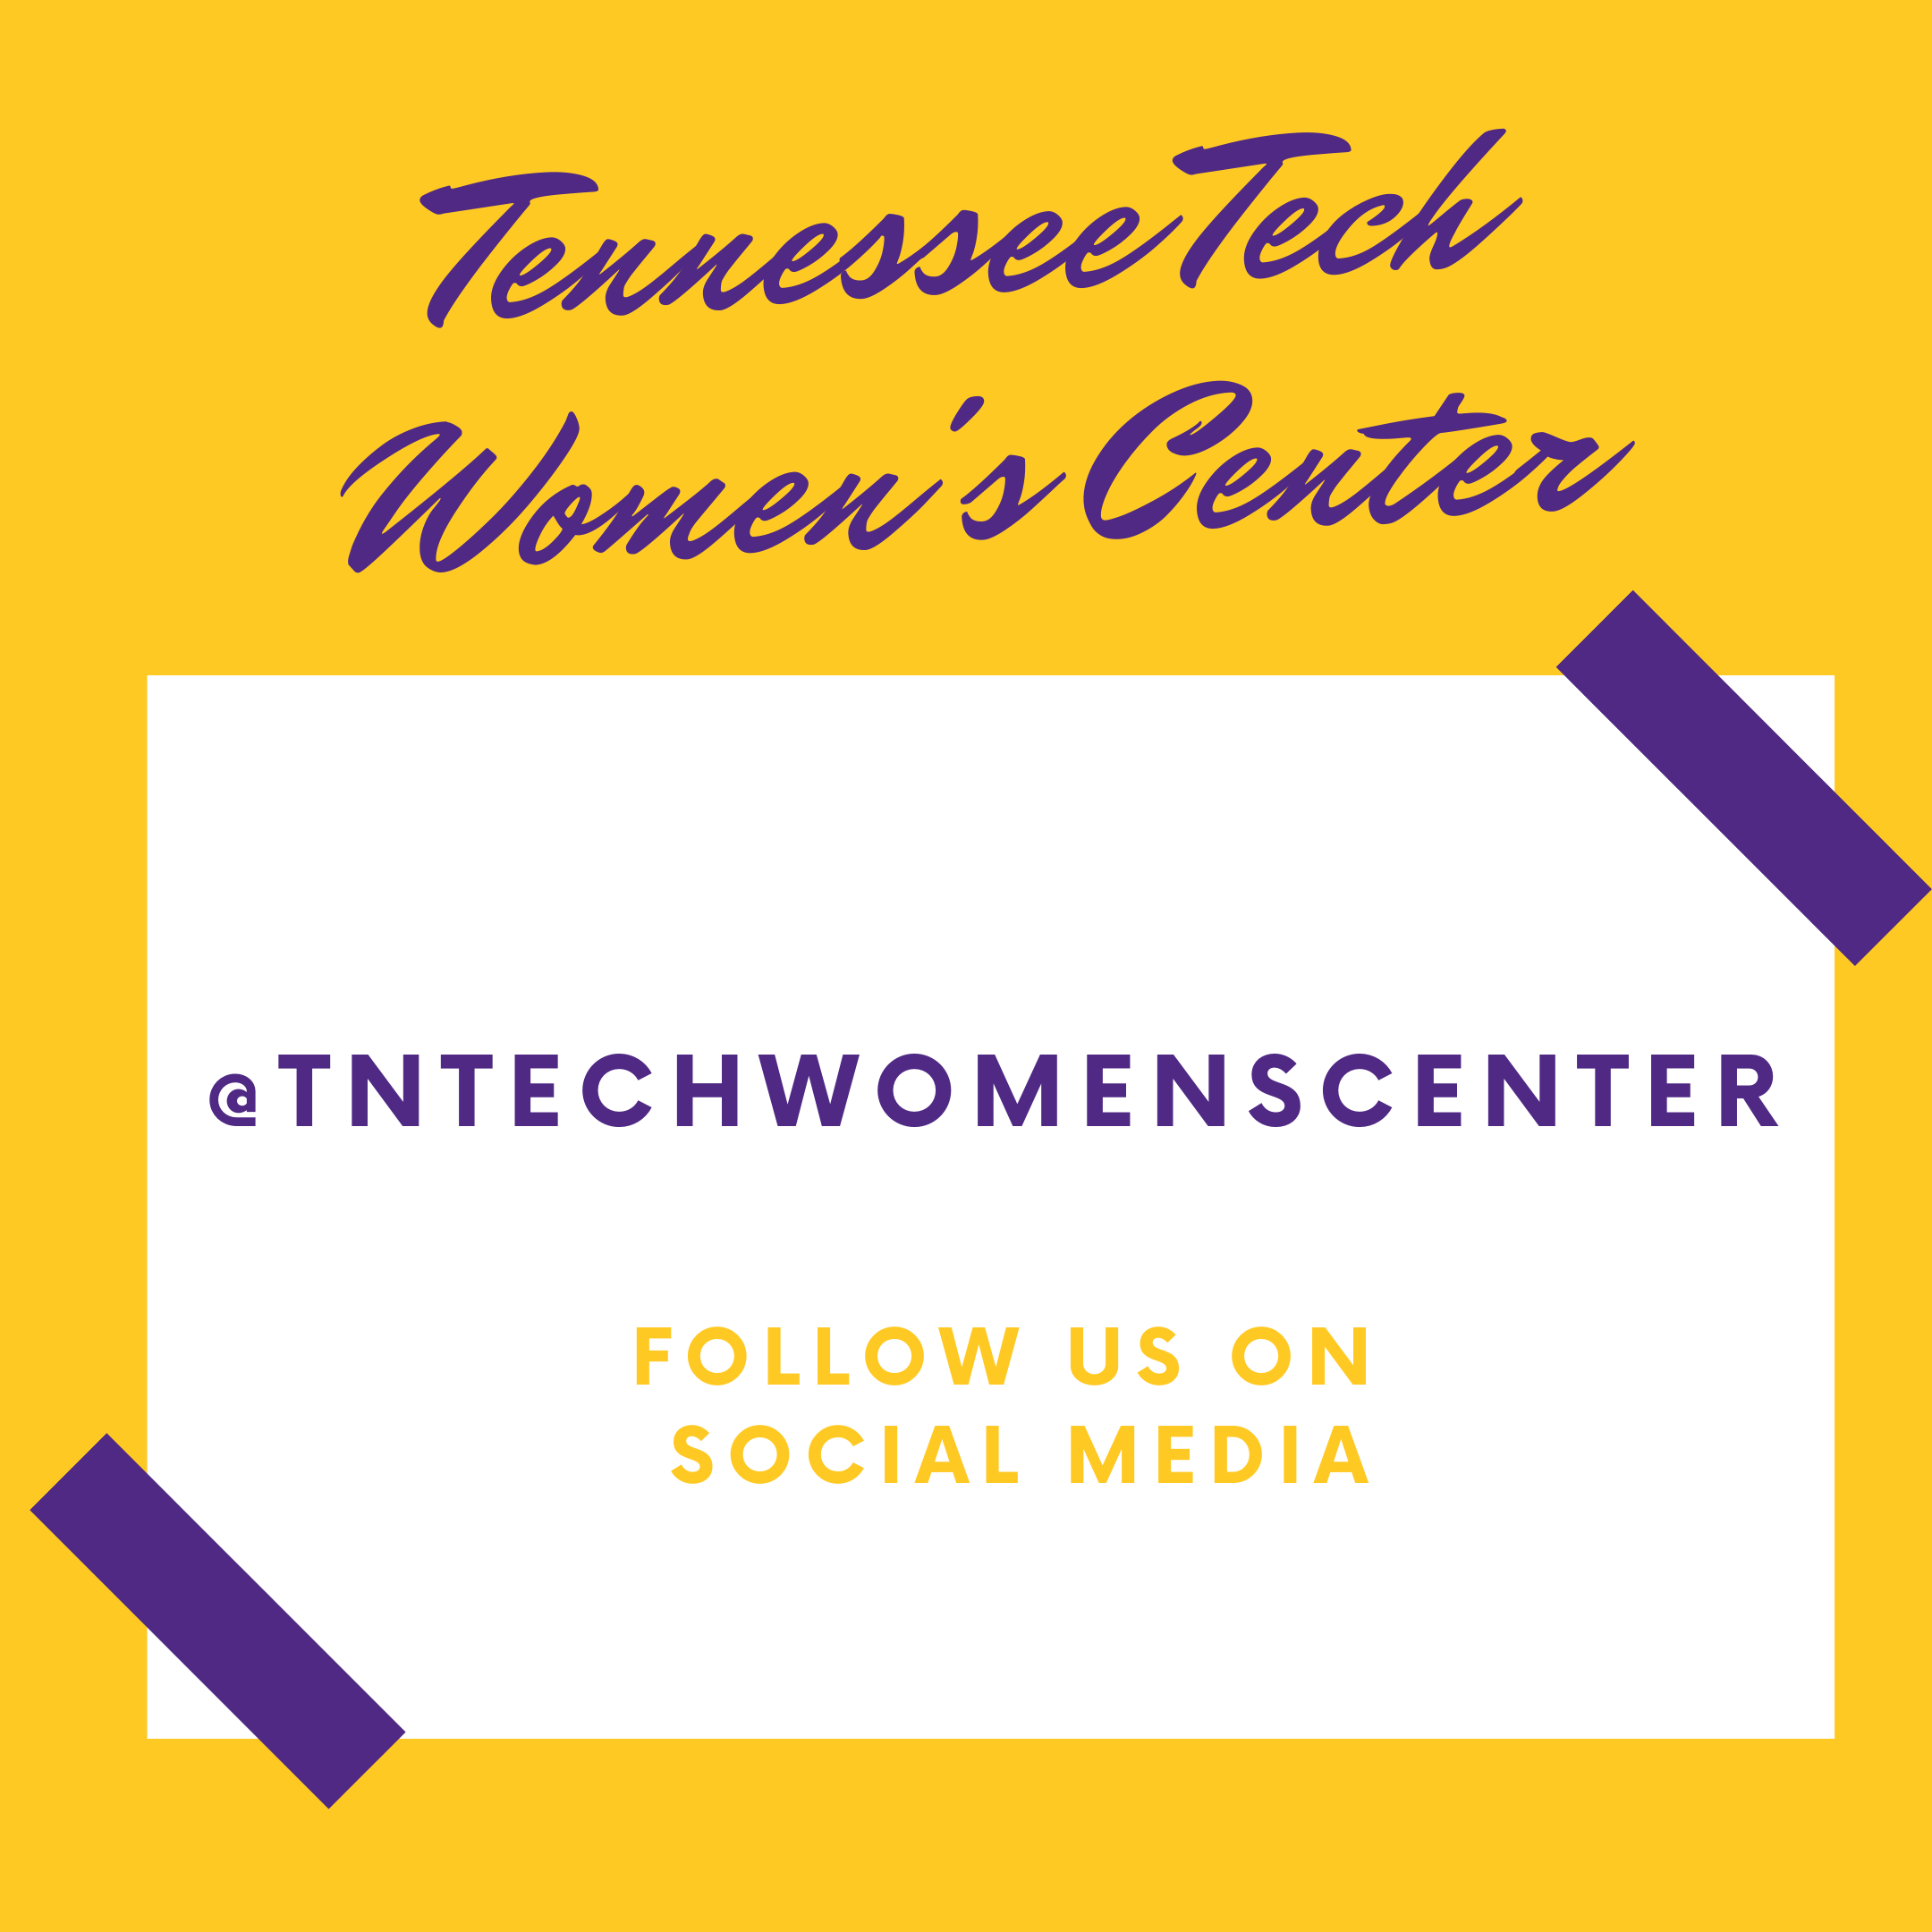 Follow us on social media: @tntechwomenscenter on Instagram and Facebook